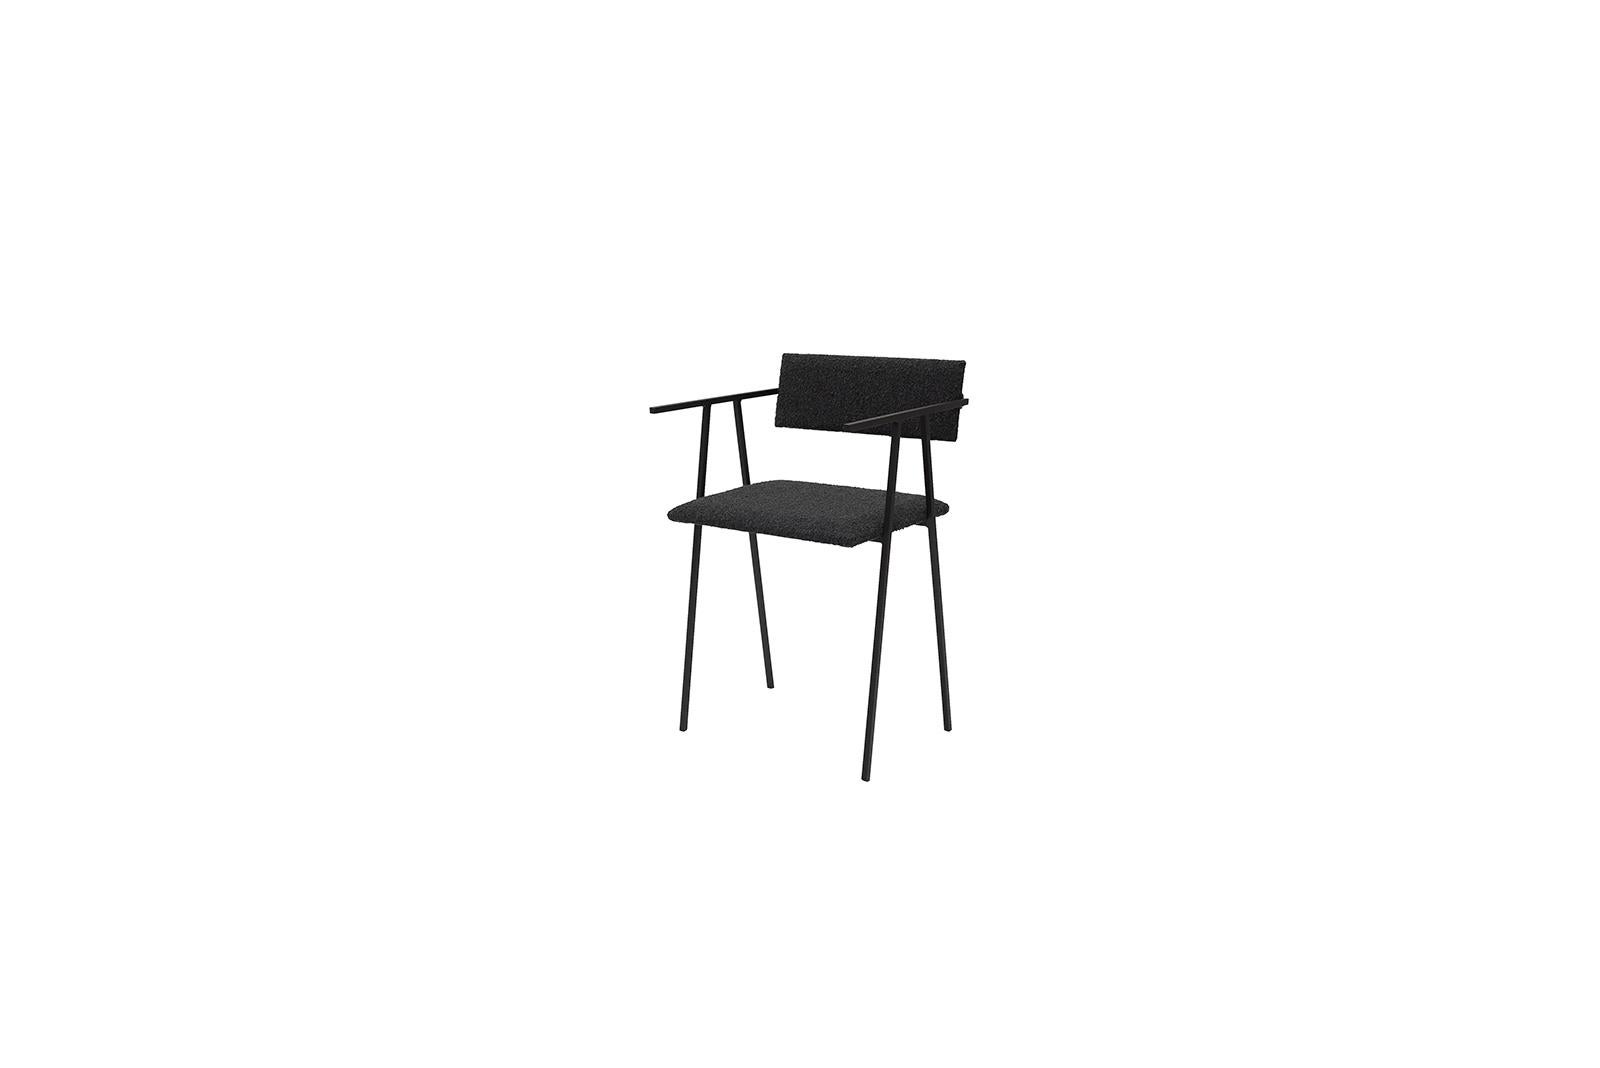 Object 058 Schwarzer Stuhl von NG Design
Abmessungen: T45 x B42 x H75 cm
MATERIALIEN: Pulverbeschichteter Stahl, Boucle-Polsterung.

Auch verfügbar: Alle Objekte sind auf Anfrage in verschiedenen MATERIALEN und Farben erhältlich

Object058 ist ein